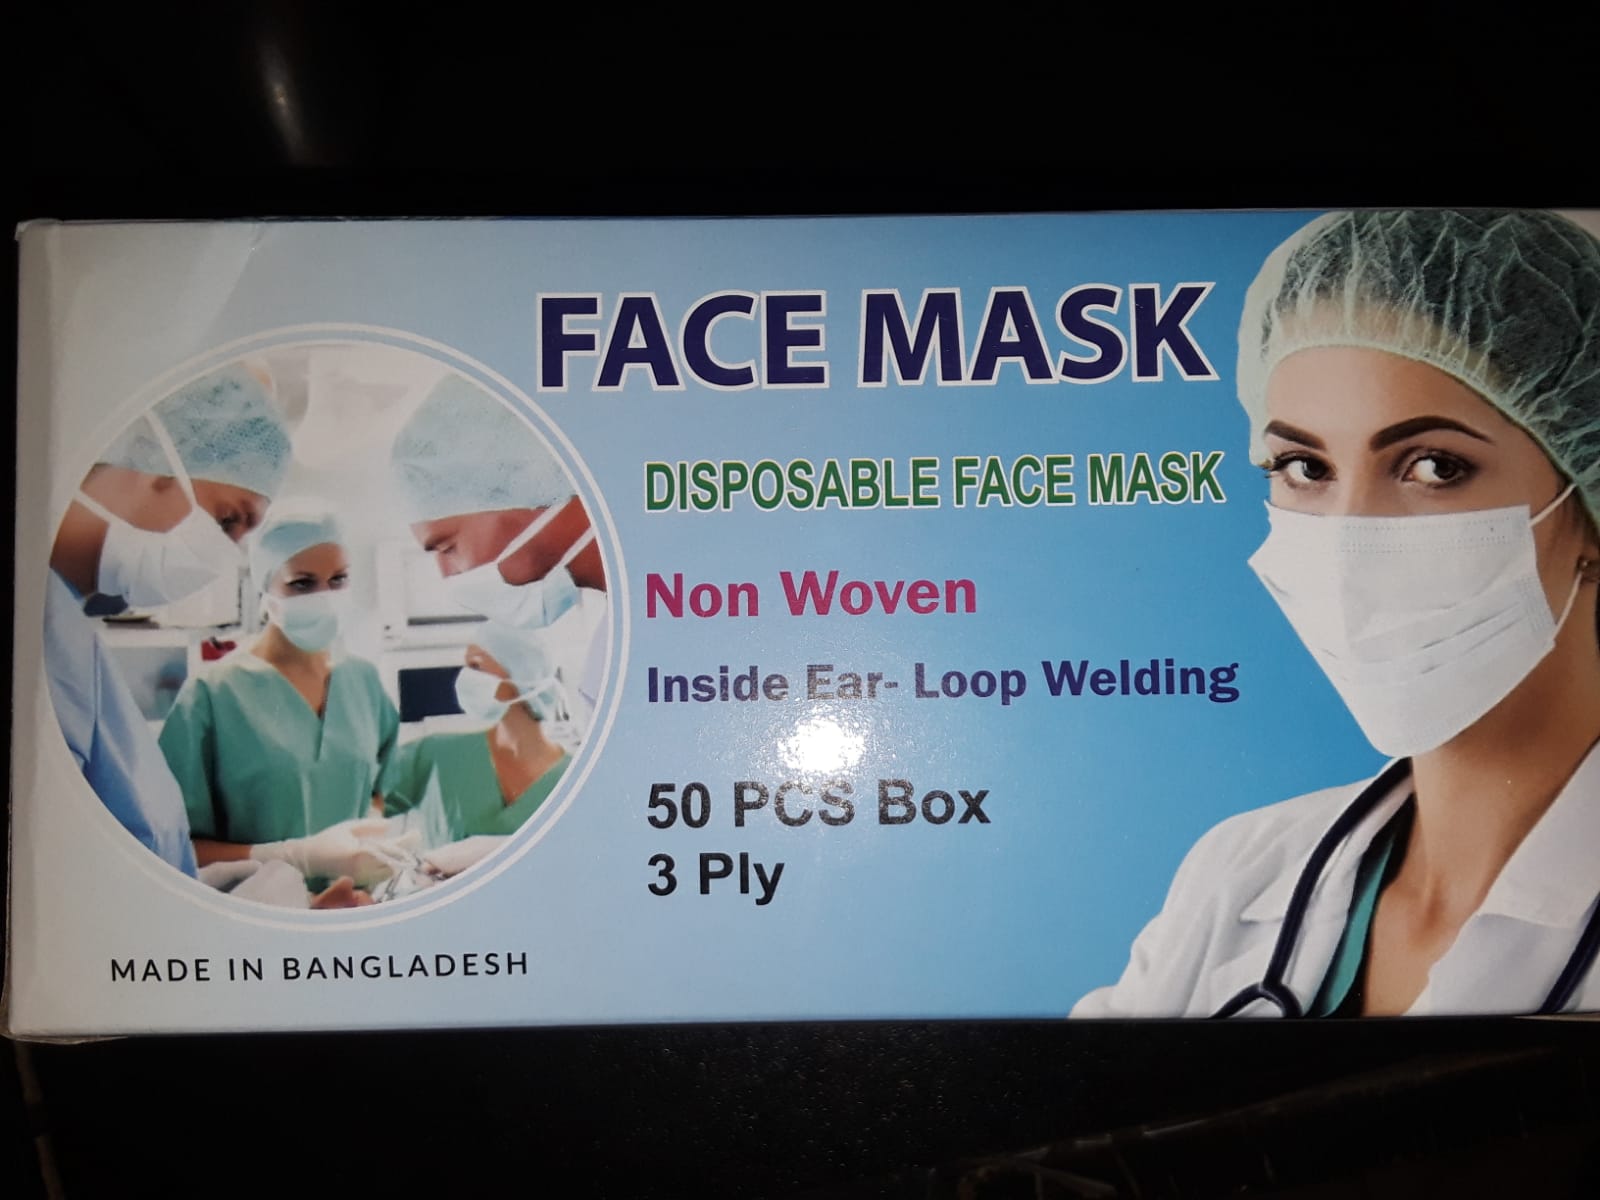 Disposable Face Mask Non Woven 50pcs Box 3 Ply